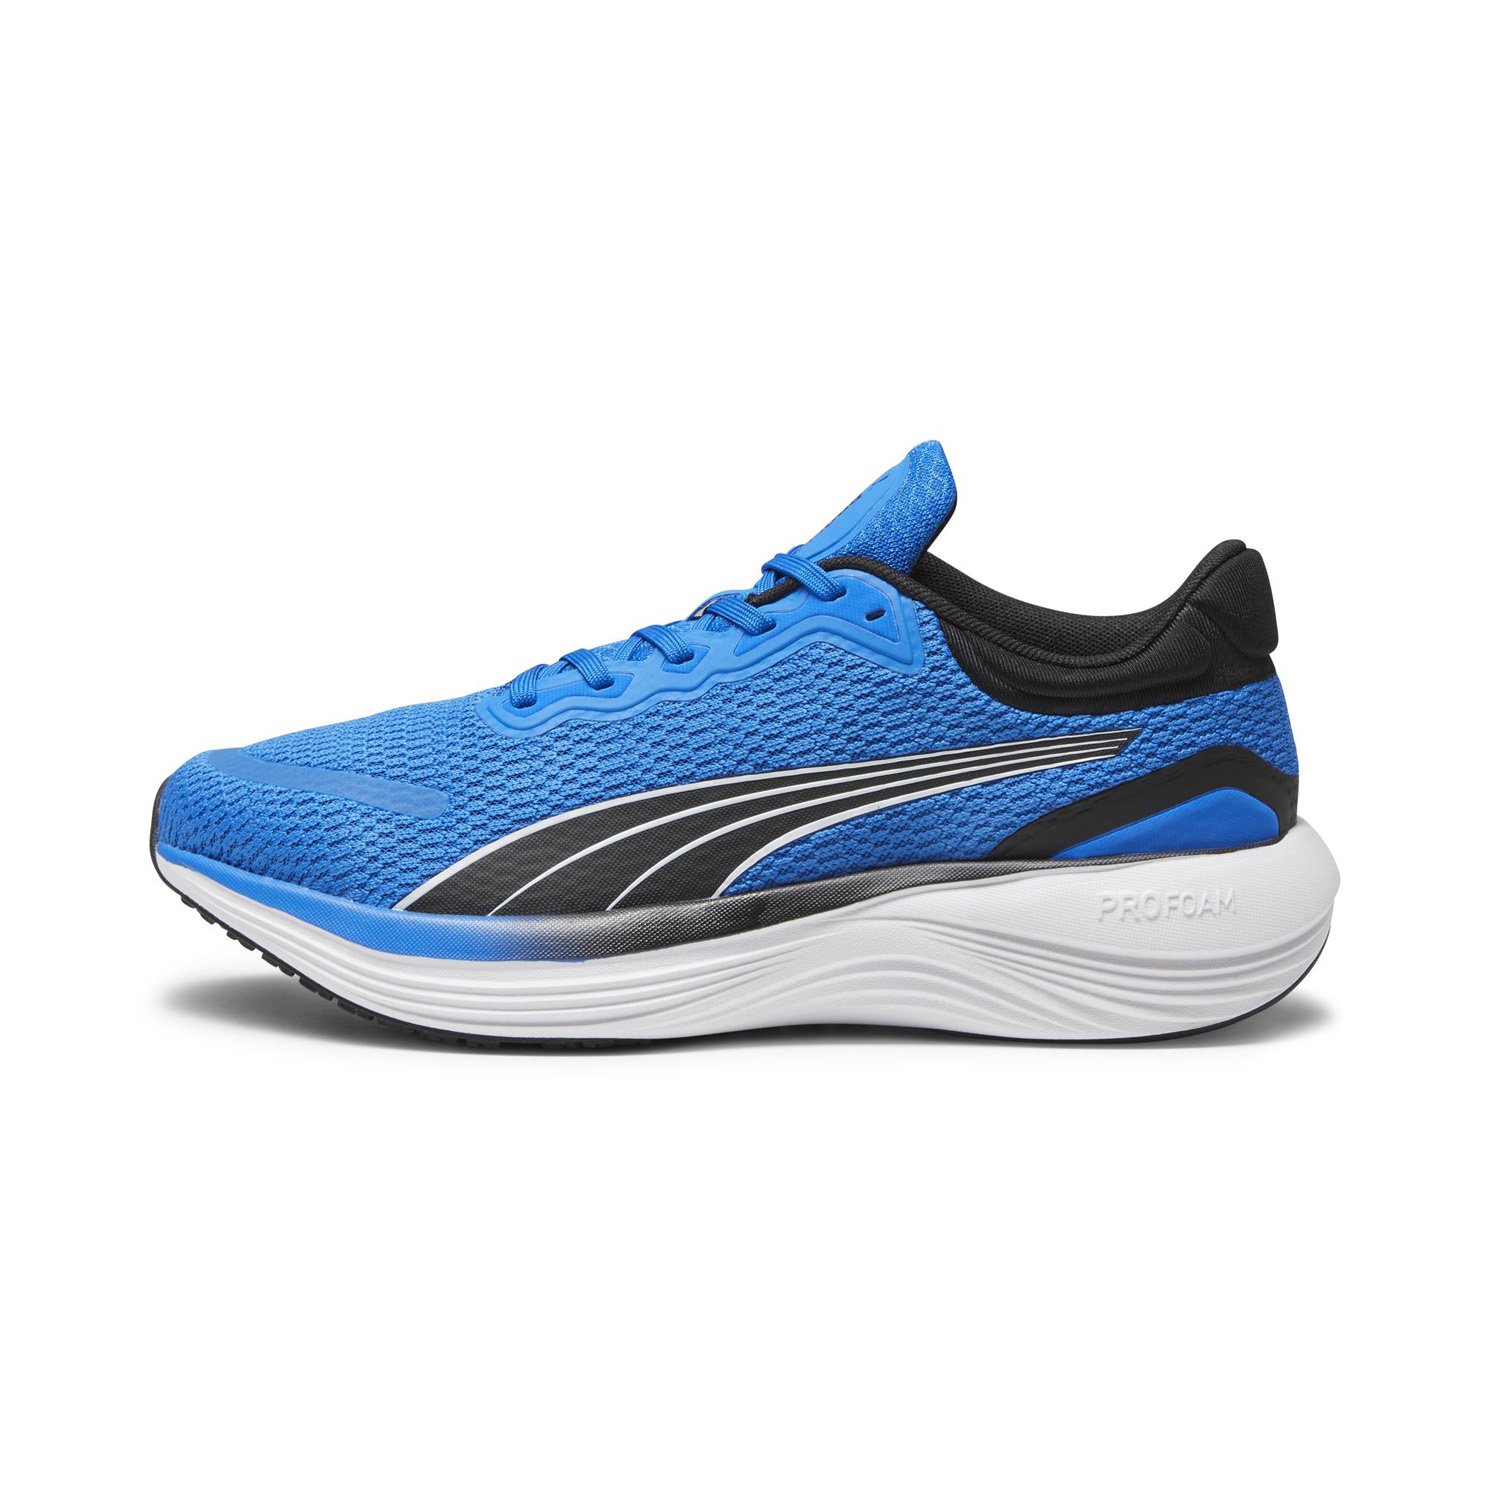 Puma Scend Pro Erkek Koşu Ayakkabısı - Mavi - 1